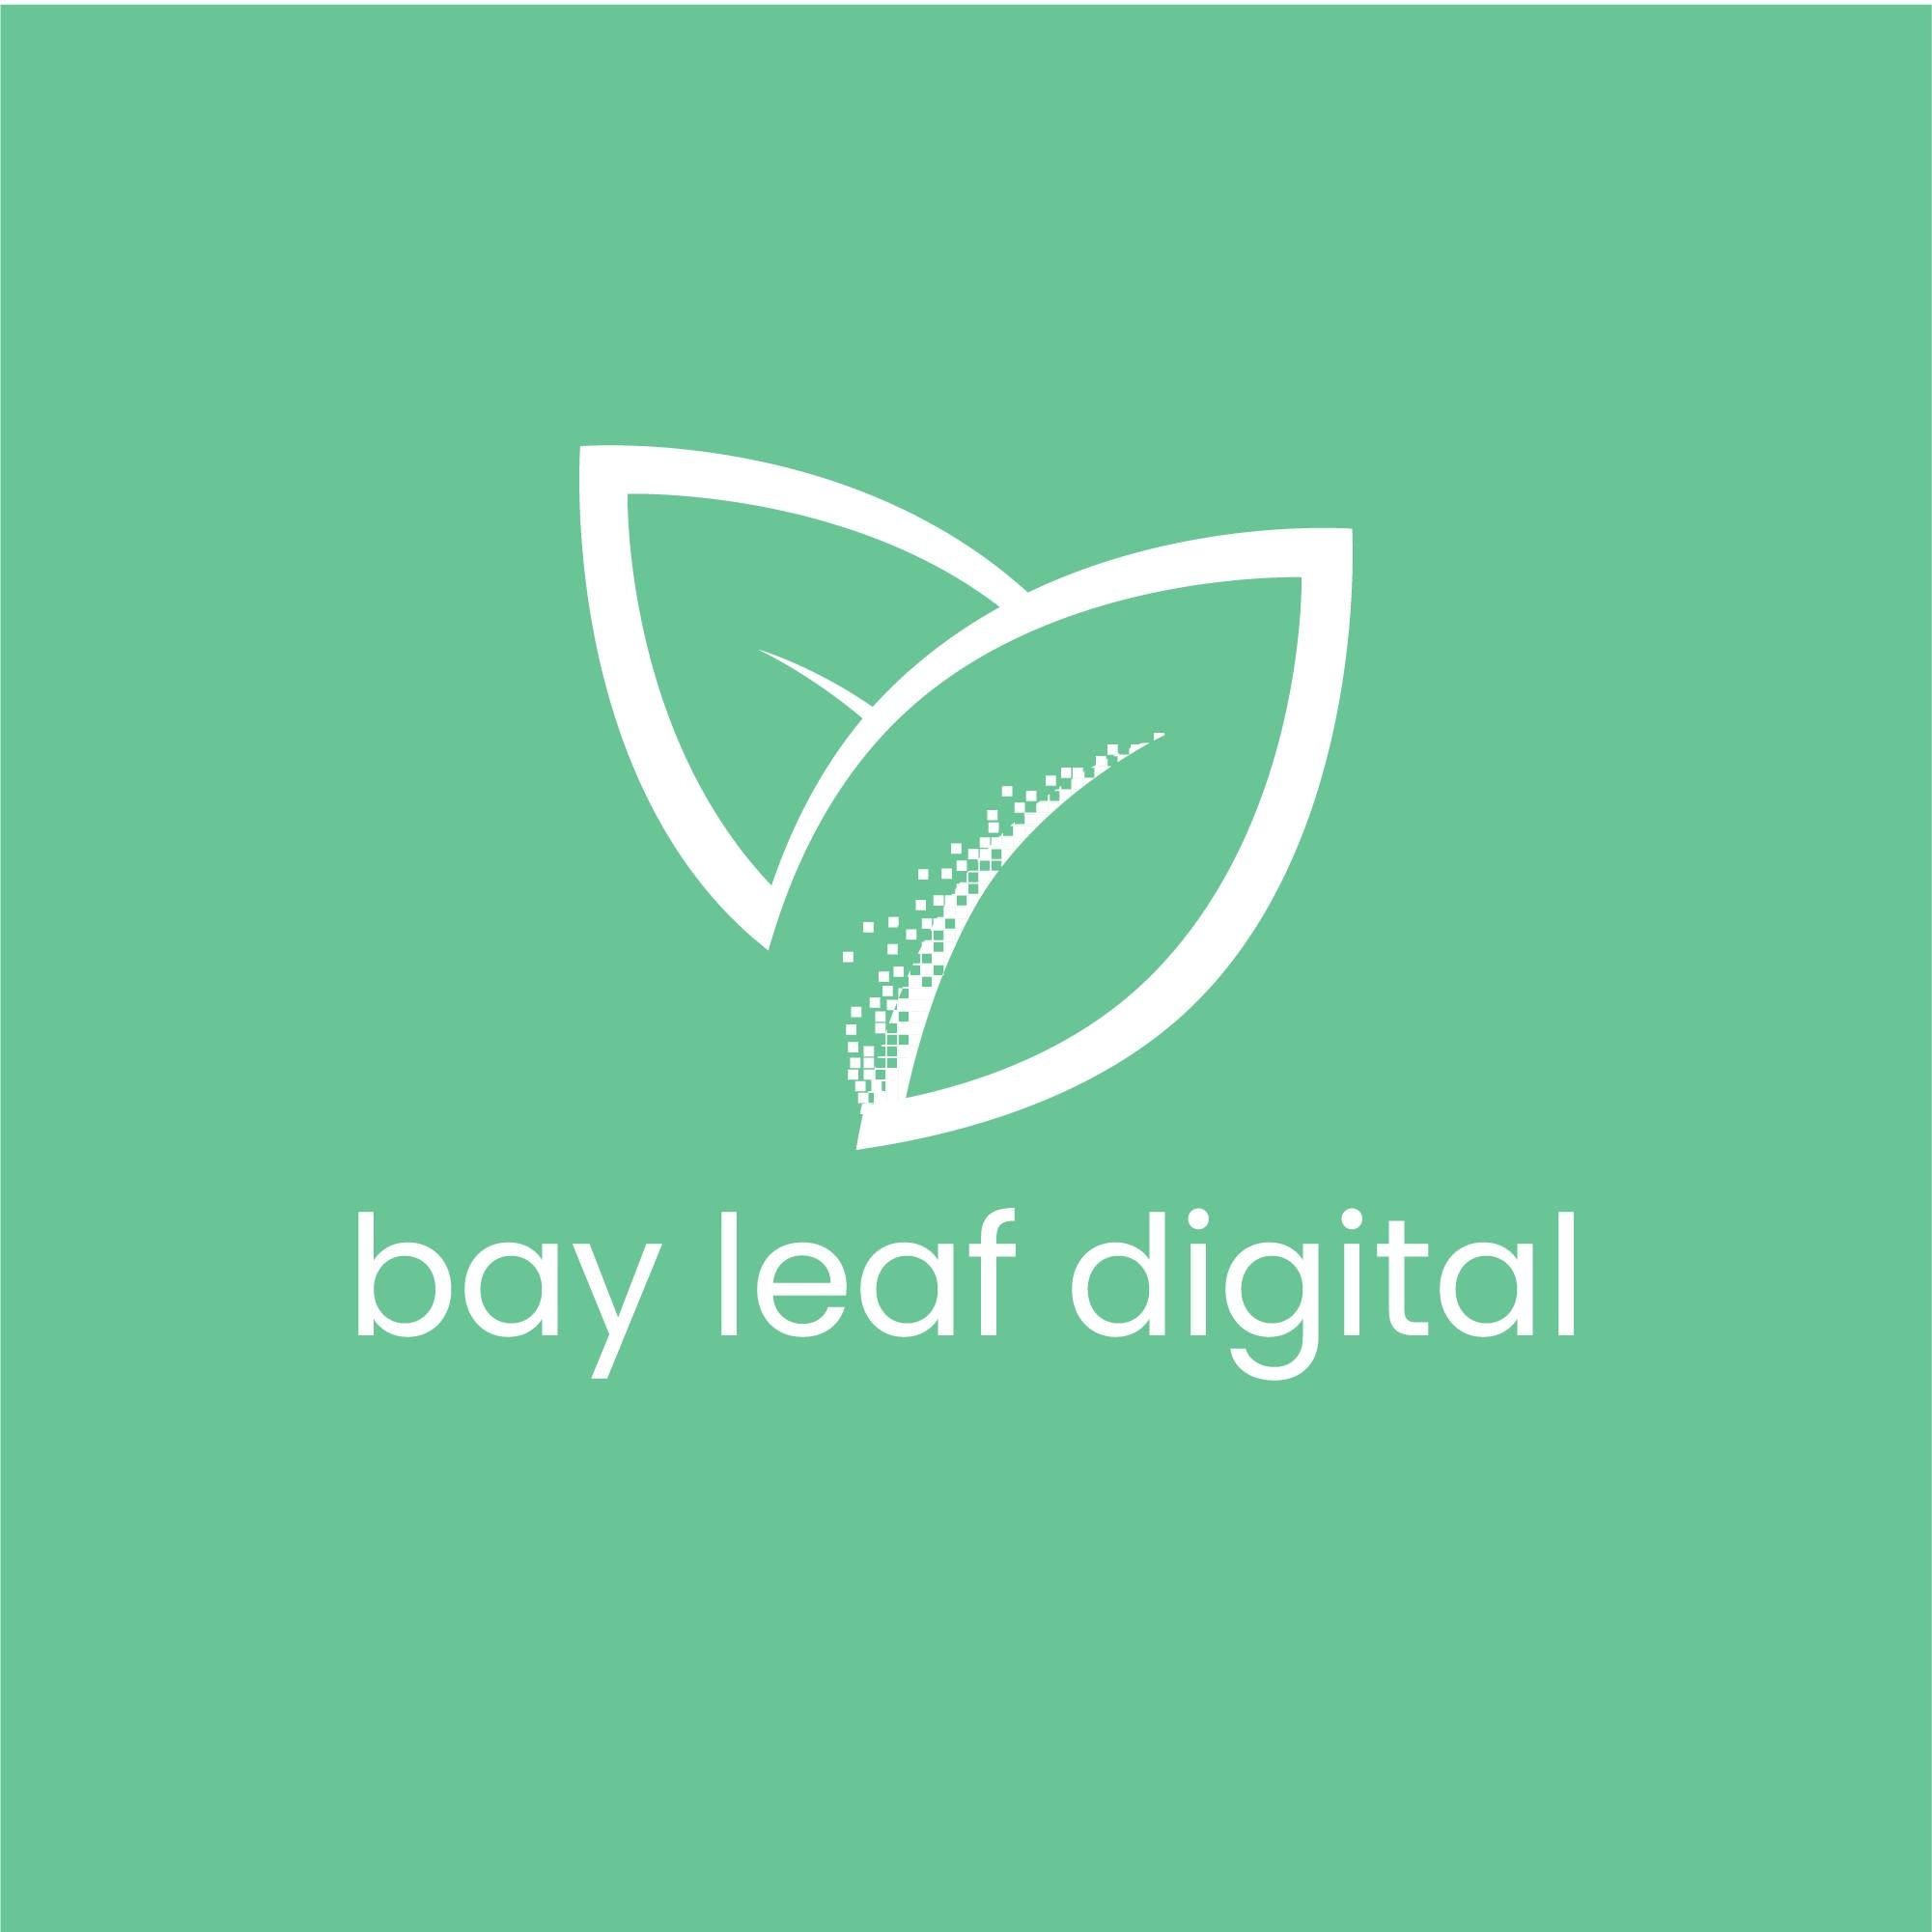 bay leaf digital logo